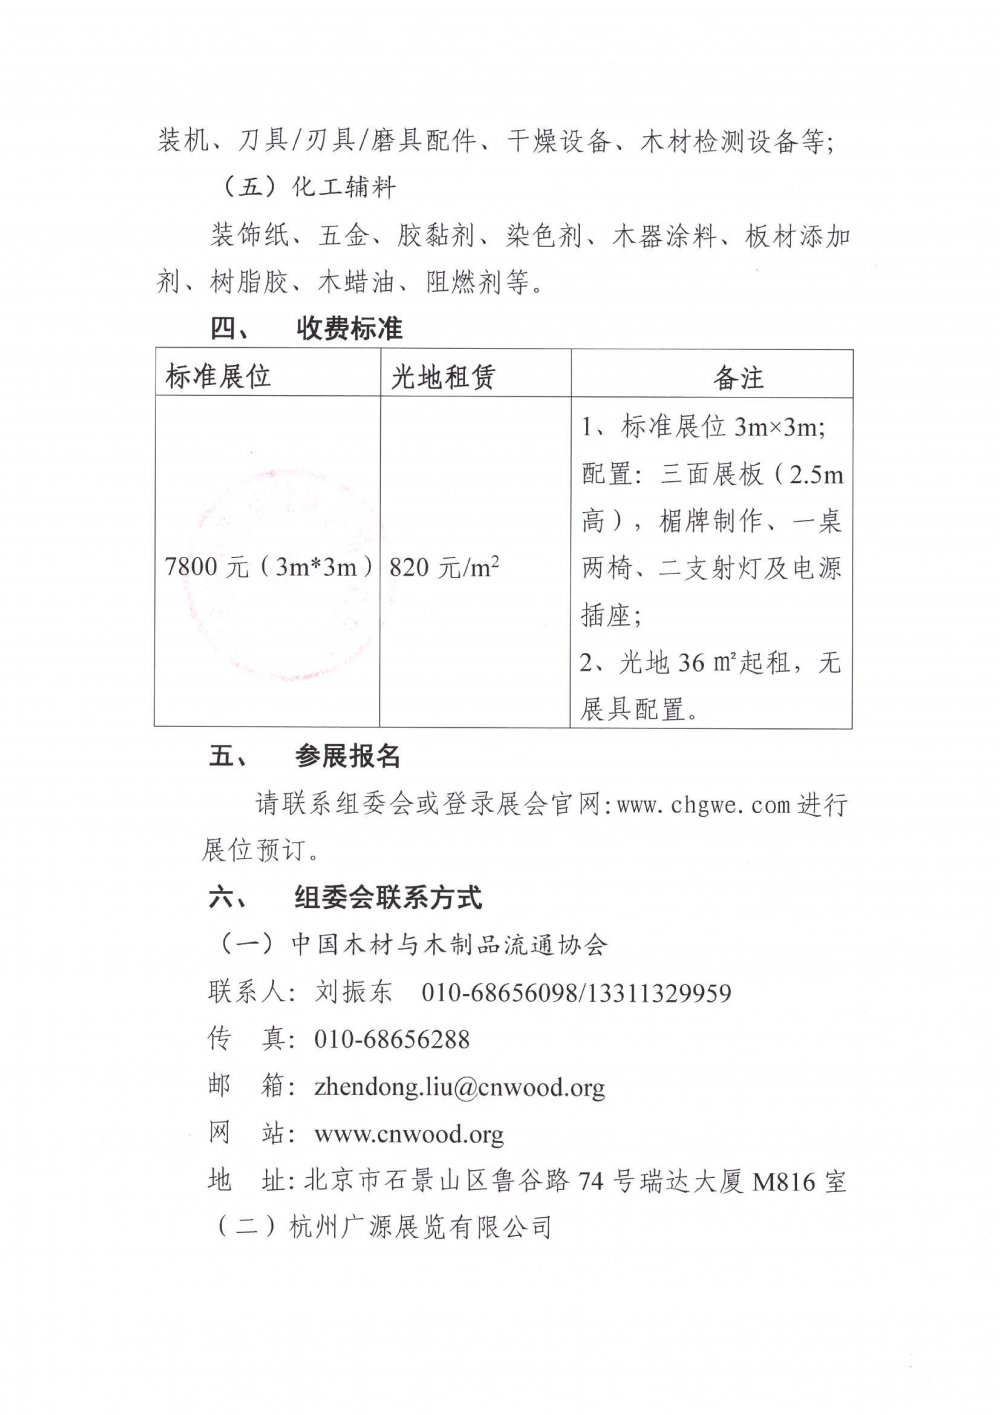 关于召开第二届中国（湖州）绿色家居博览会的通知2(1)_02.jpg